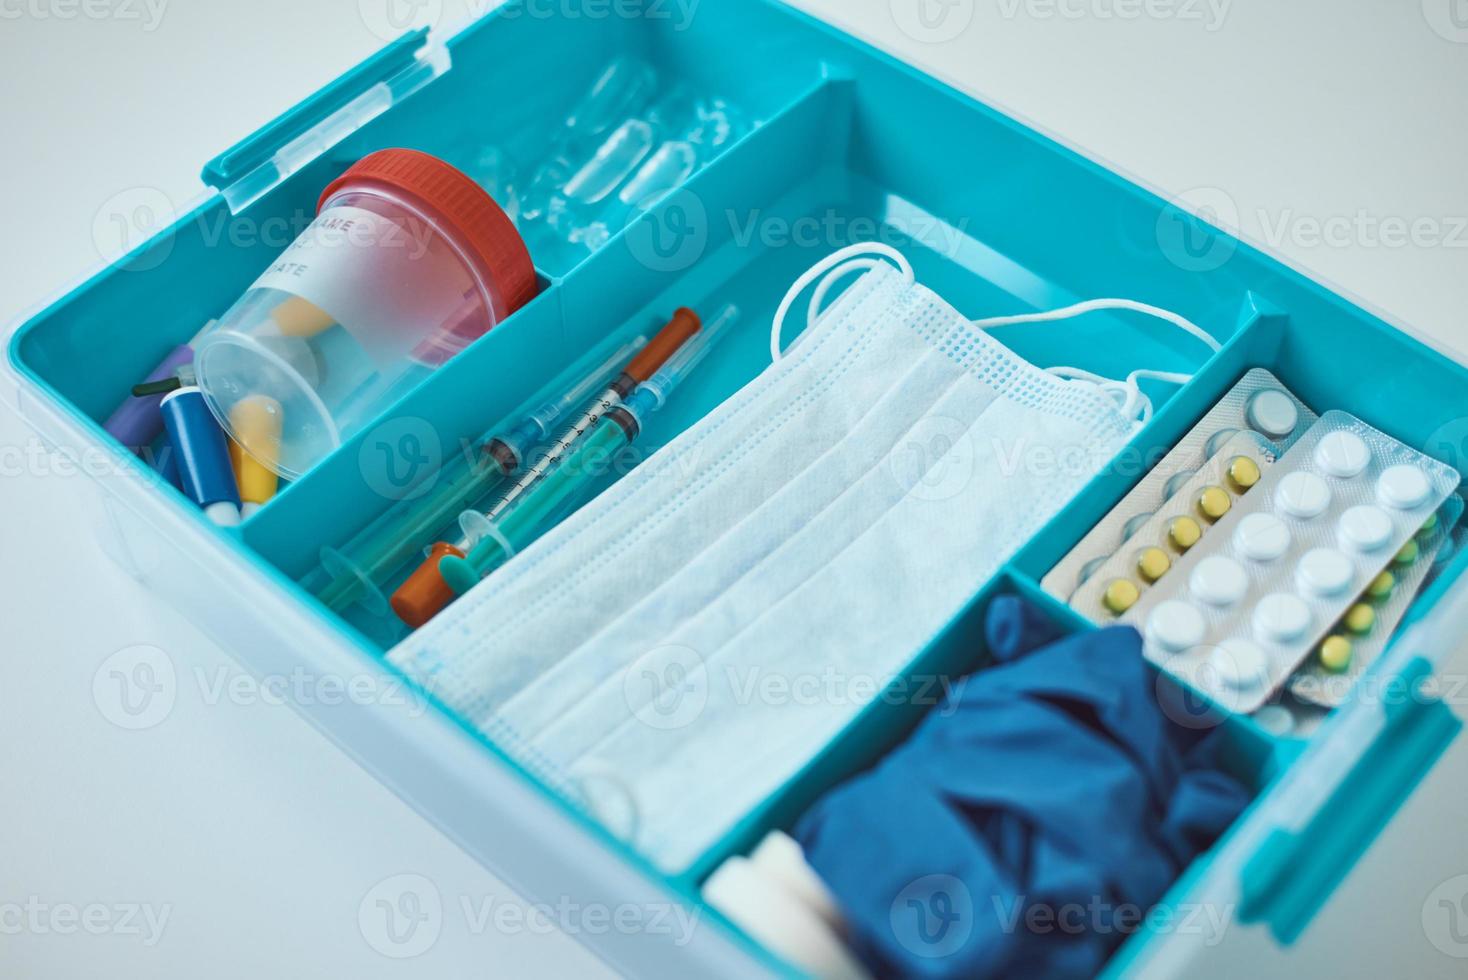 Hem medicin låda med en medicinsk föremål. sjukvård och medicin begrepp. foto